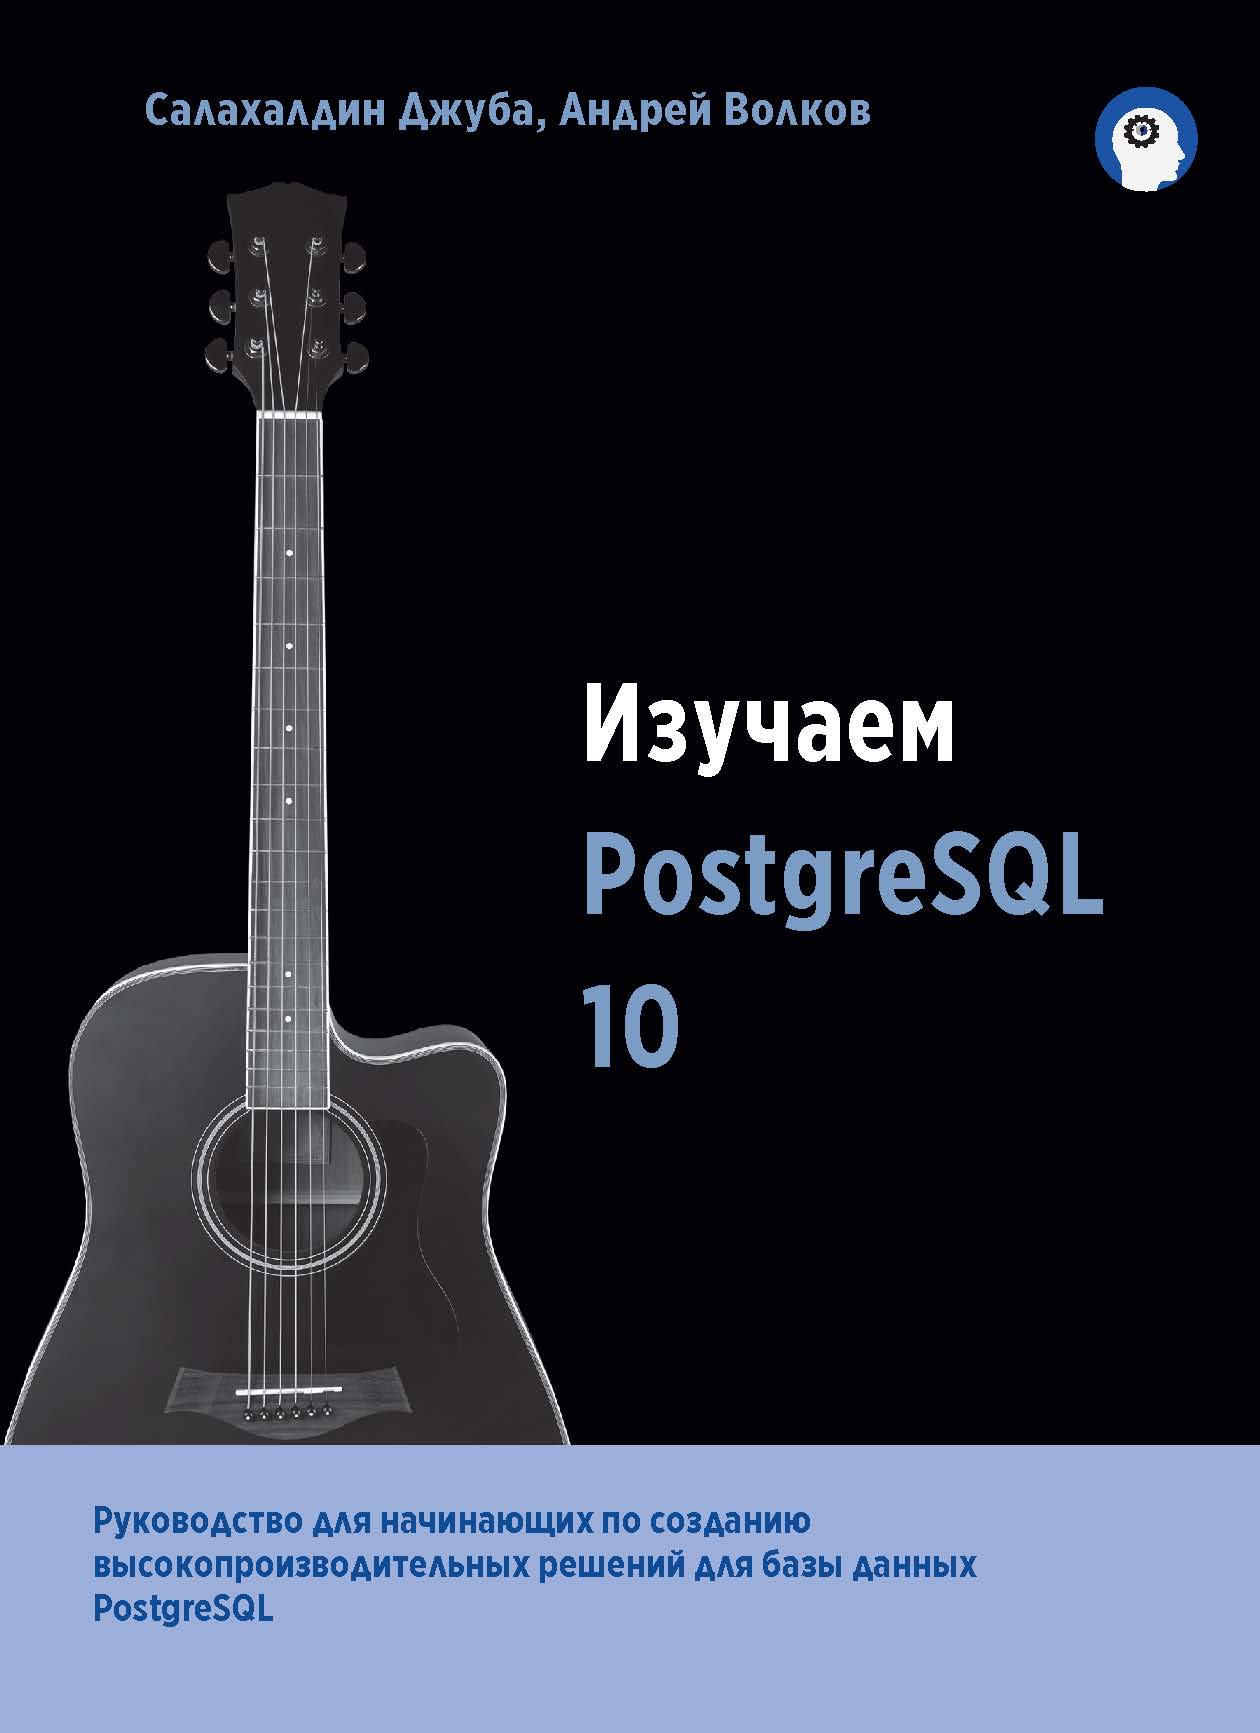 Книга  Изучаем PostgreSQL 10 созданная Салахалдин Джуба, Андрей Волков, А. А. Слинкин может относится к жанру базы данных, зарубежная компьютерная литература. Стоимость электронной книги Изучаем PostgreSQL 10 с идентификатором 44336487 составляет 749.00 руб.